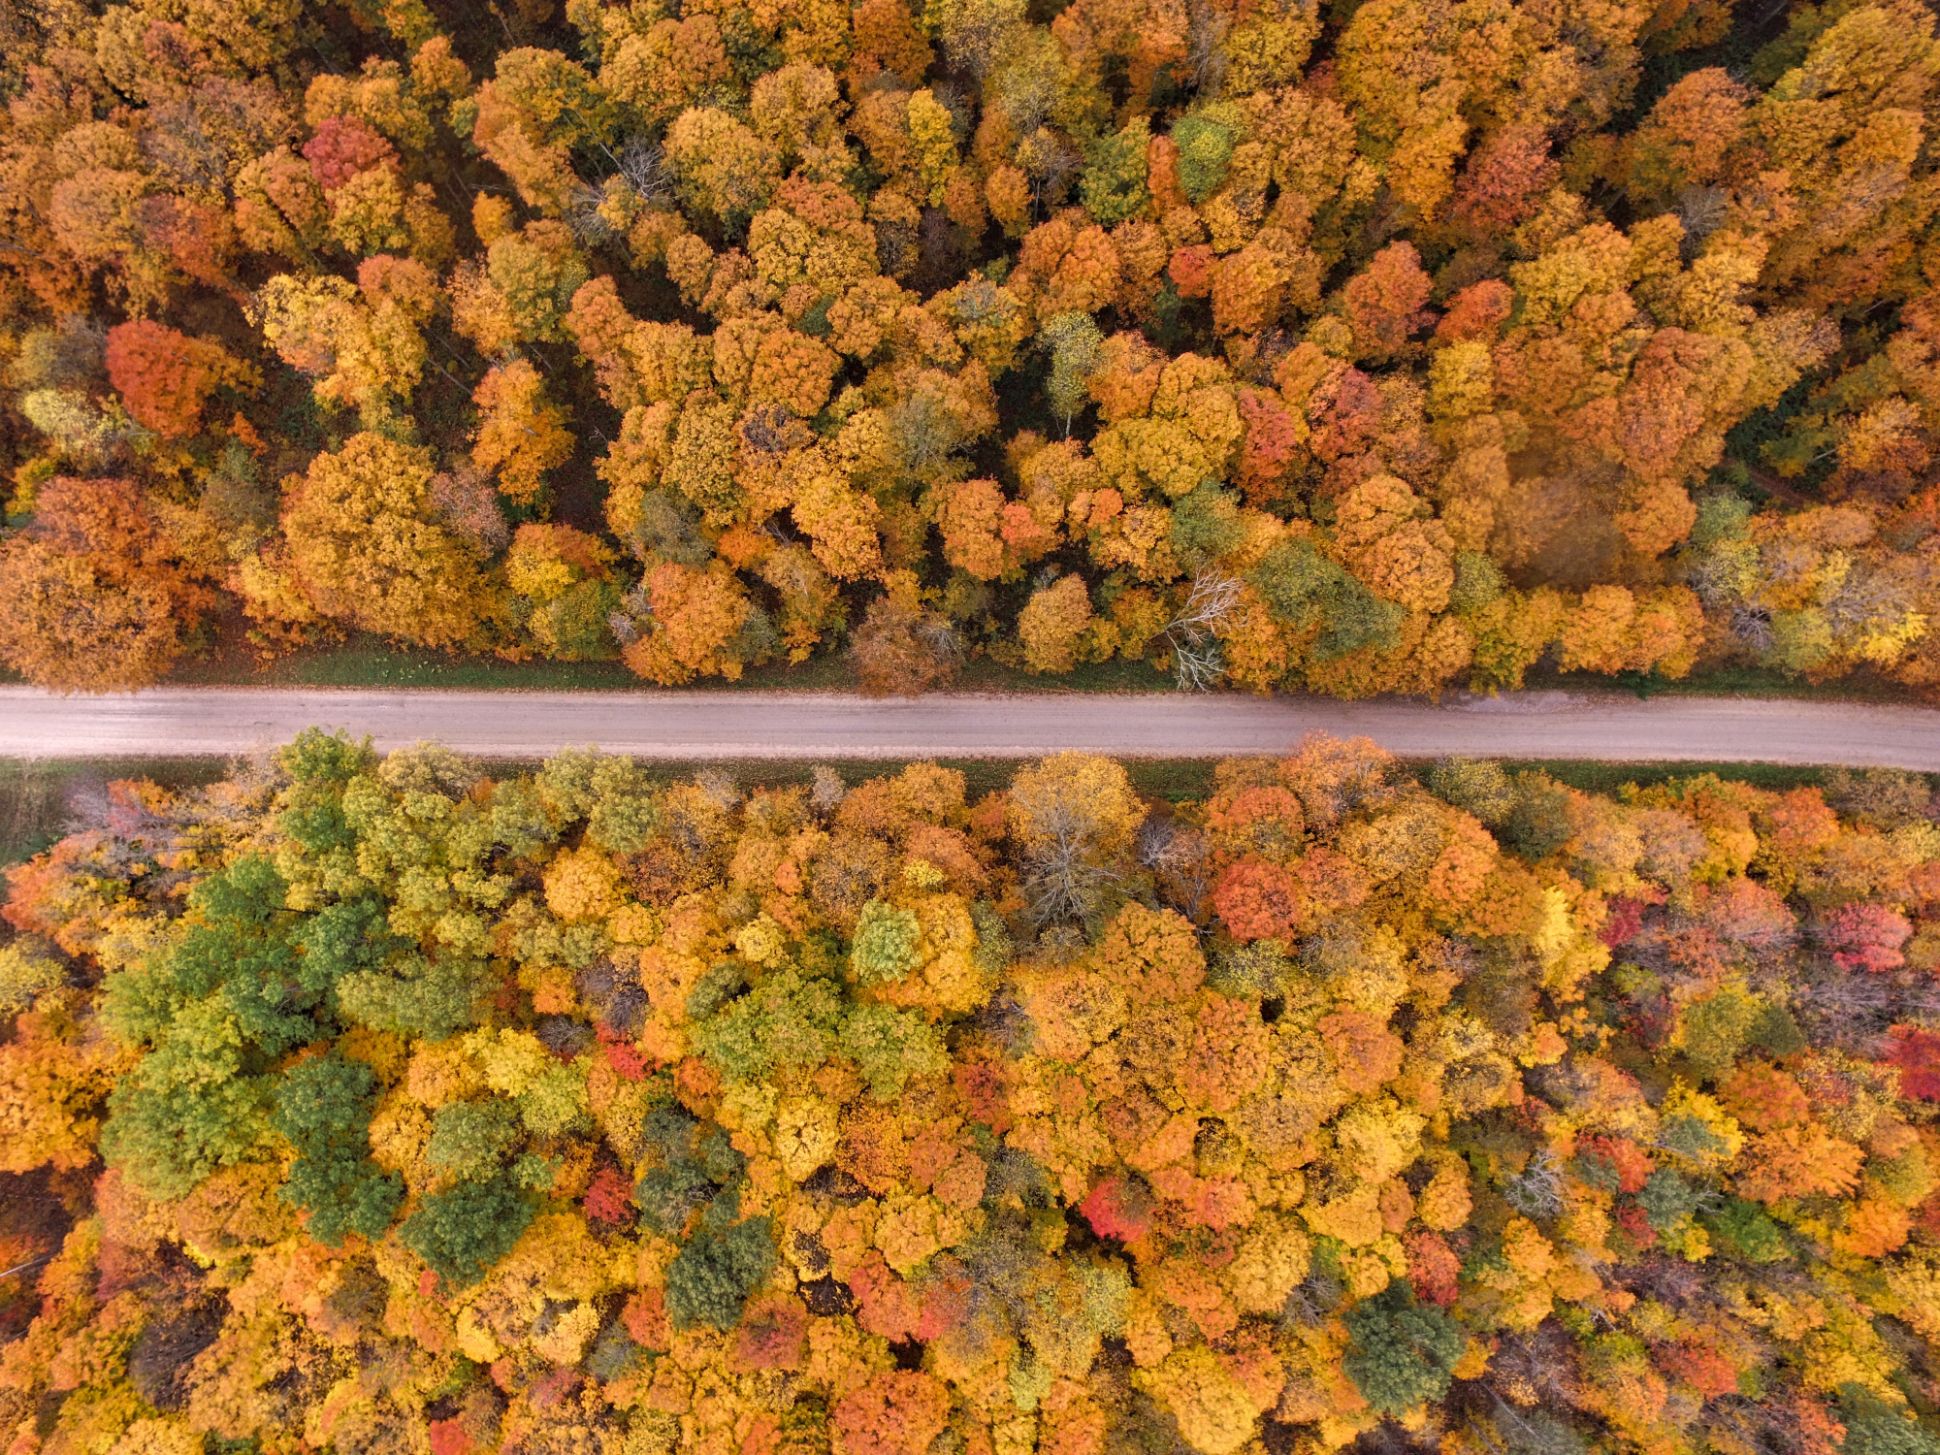 Vue aérienne d'une rue entourée d'arbres aux couleurs d'automne.